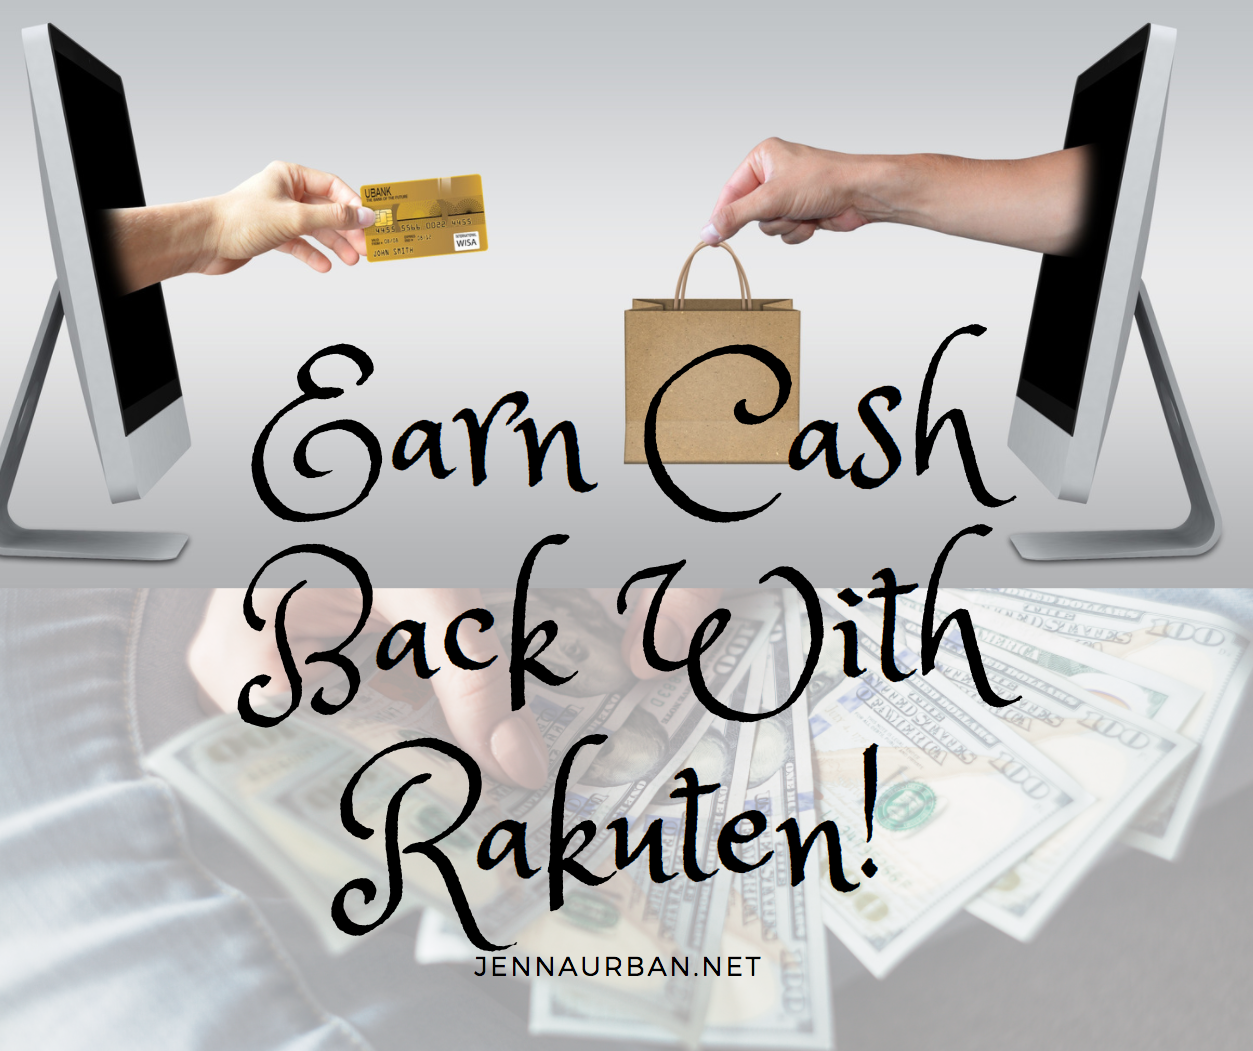 Earn Cash Back for Shopping With Rakuten